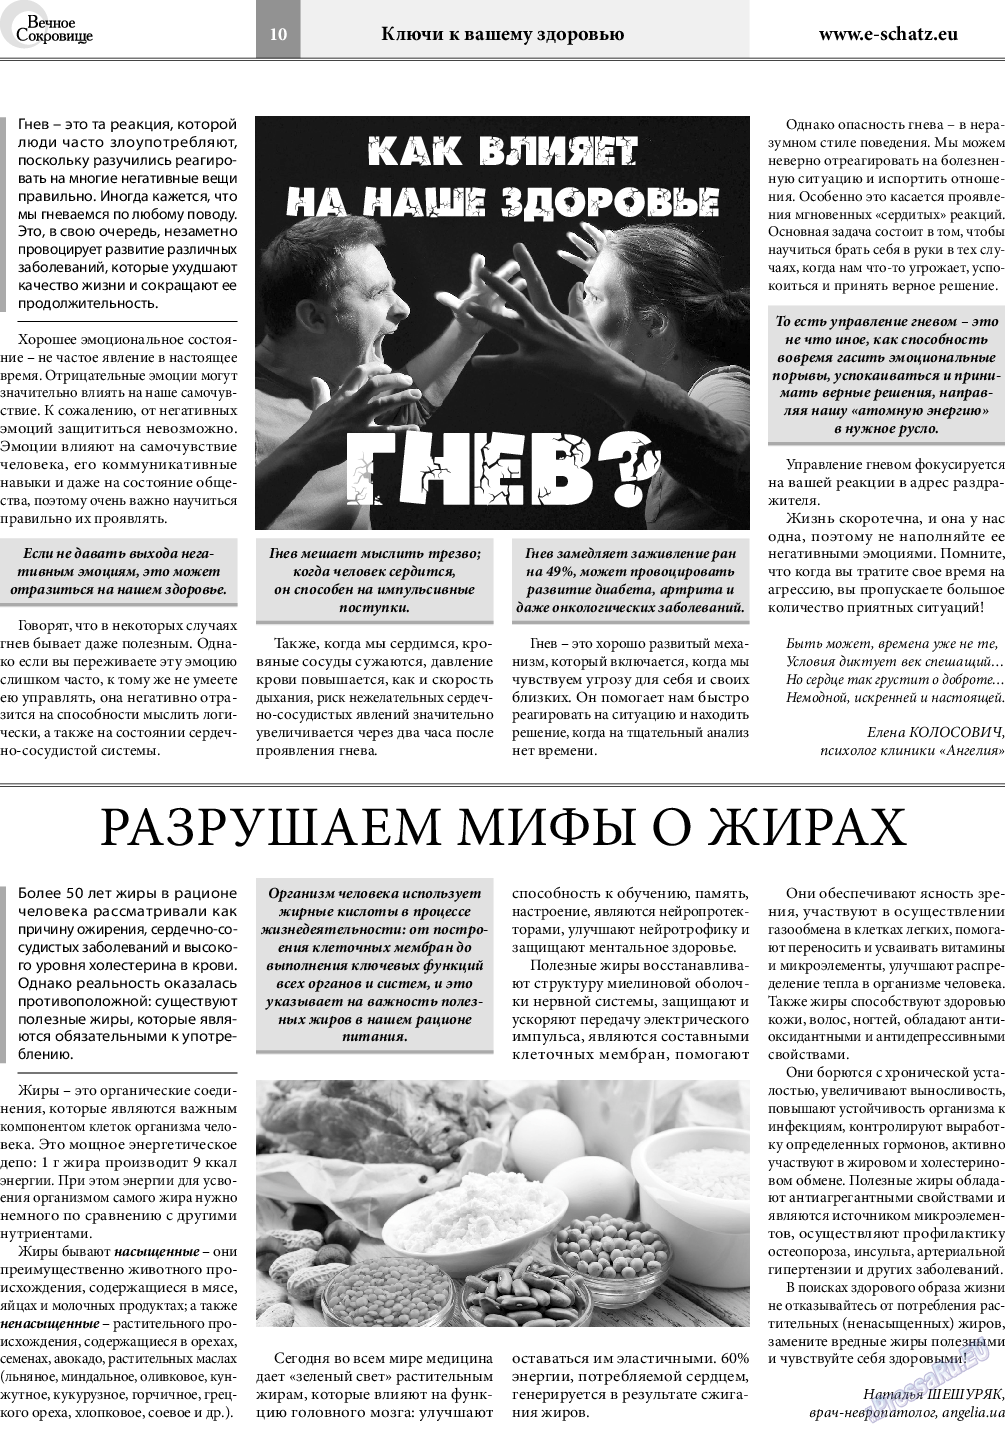 Вечное сокровище, газета. 2019 №2 стр.10